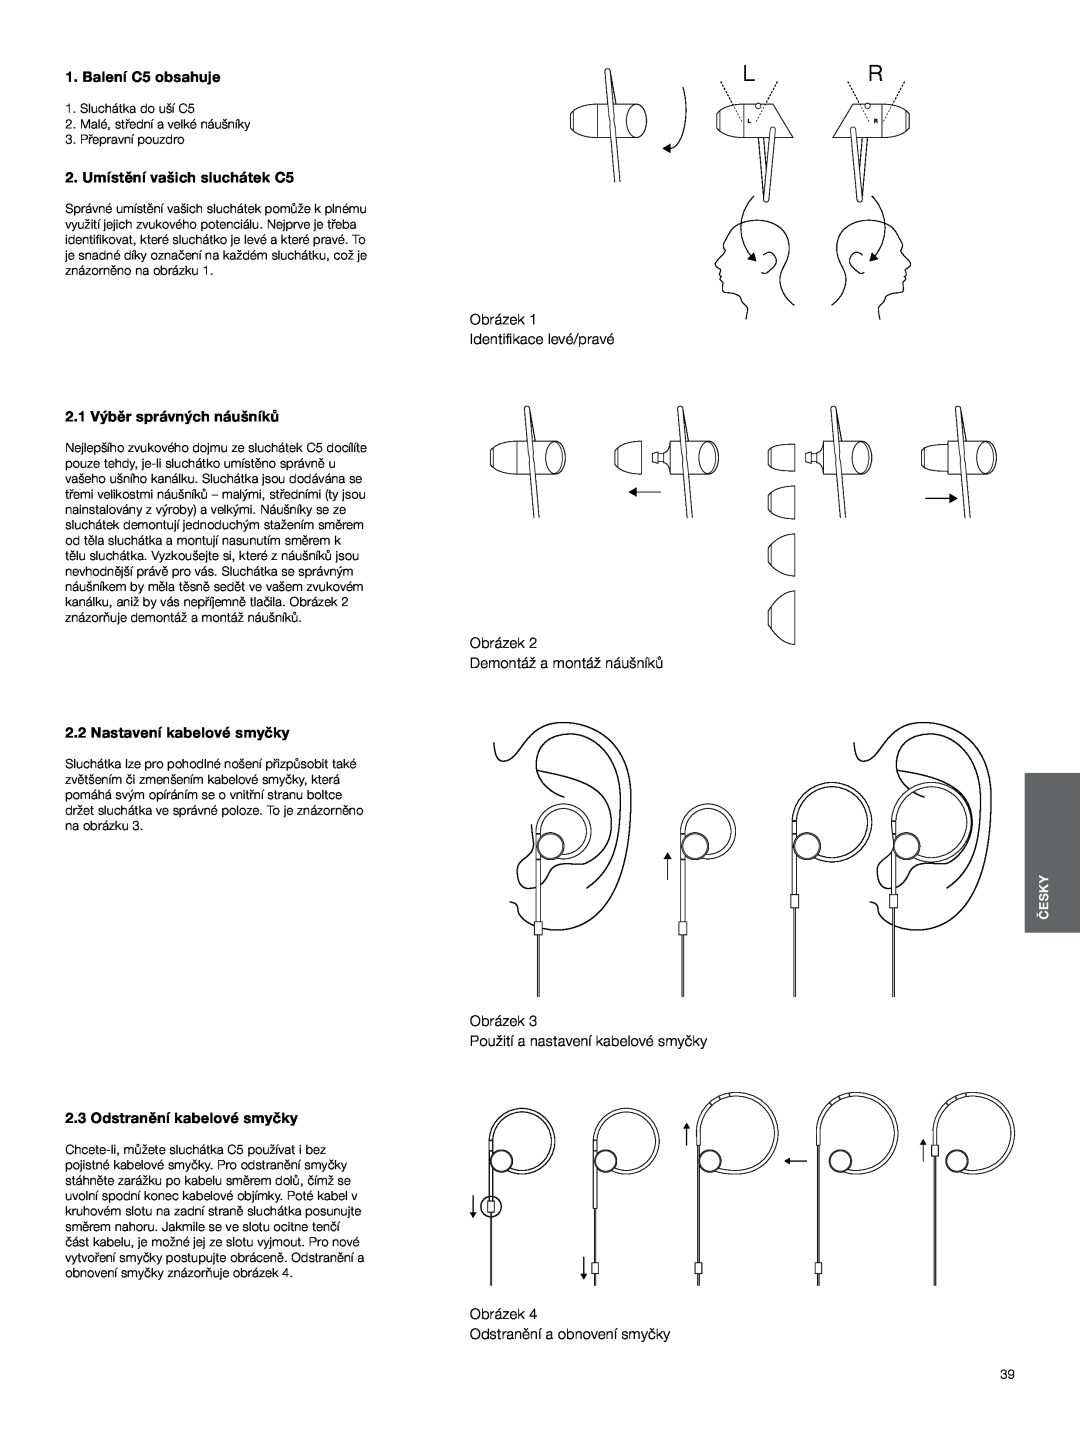 Bowers & Wilkins manual Balení C5 obsahuje, 2. Umístění vašich sluchátek C5, Obrázek Identifikace levé/pravé, Česky 